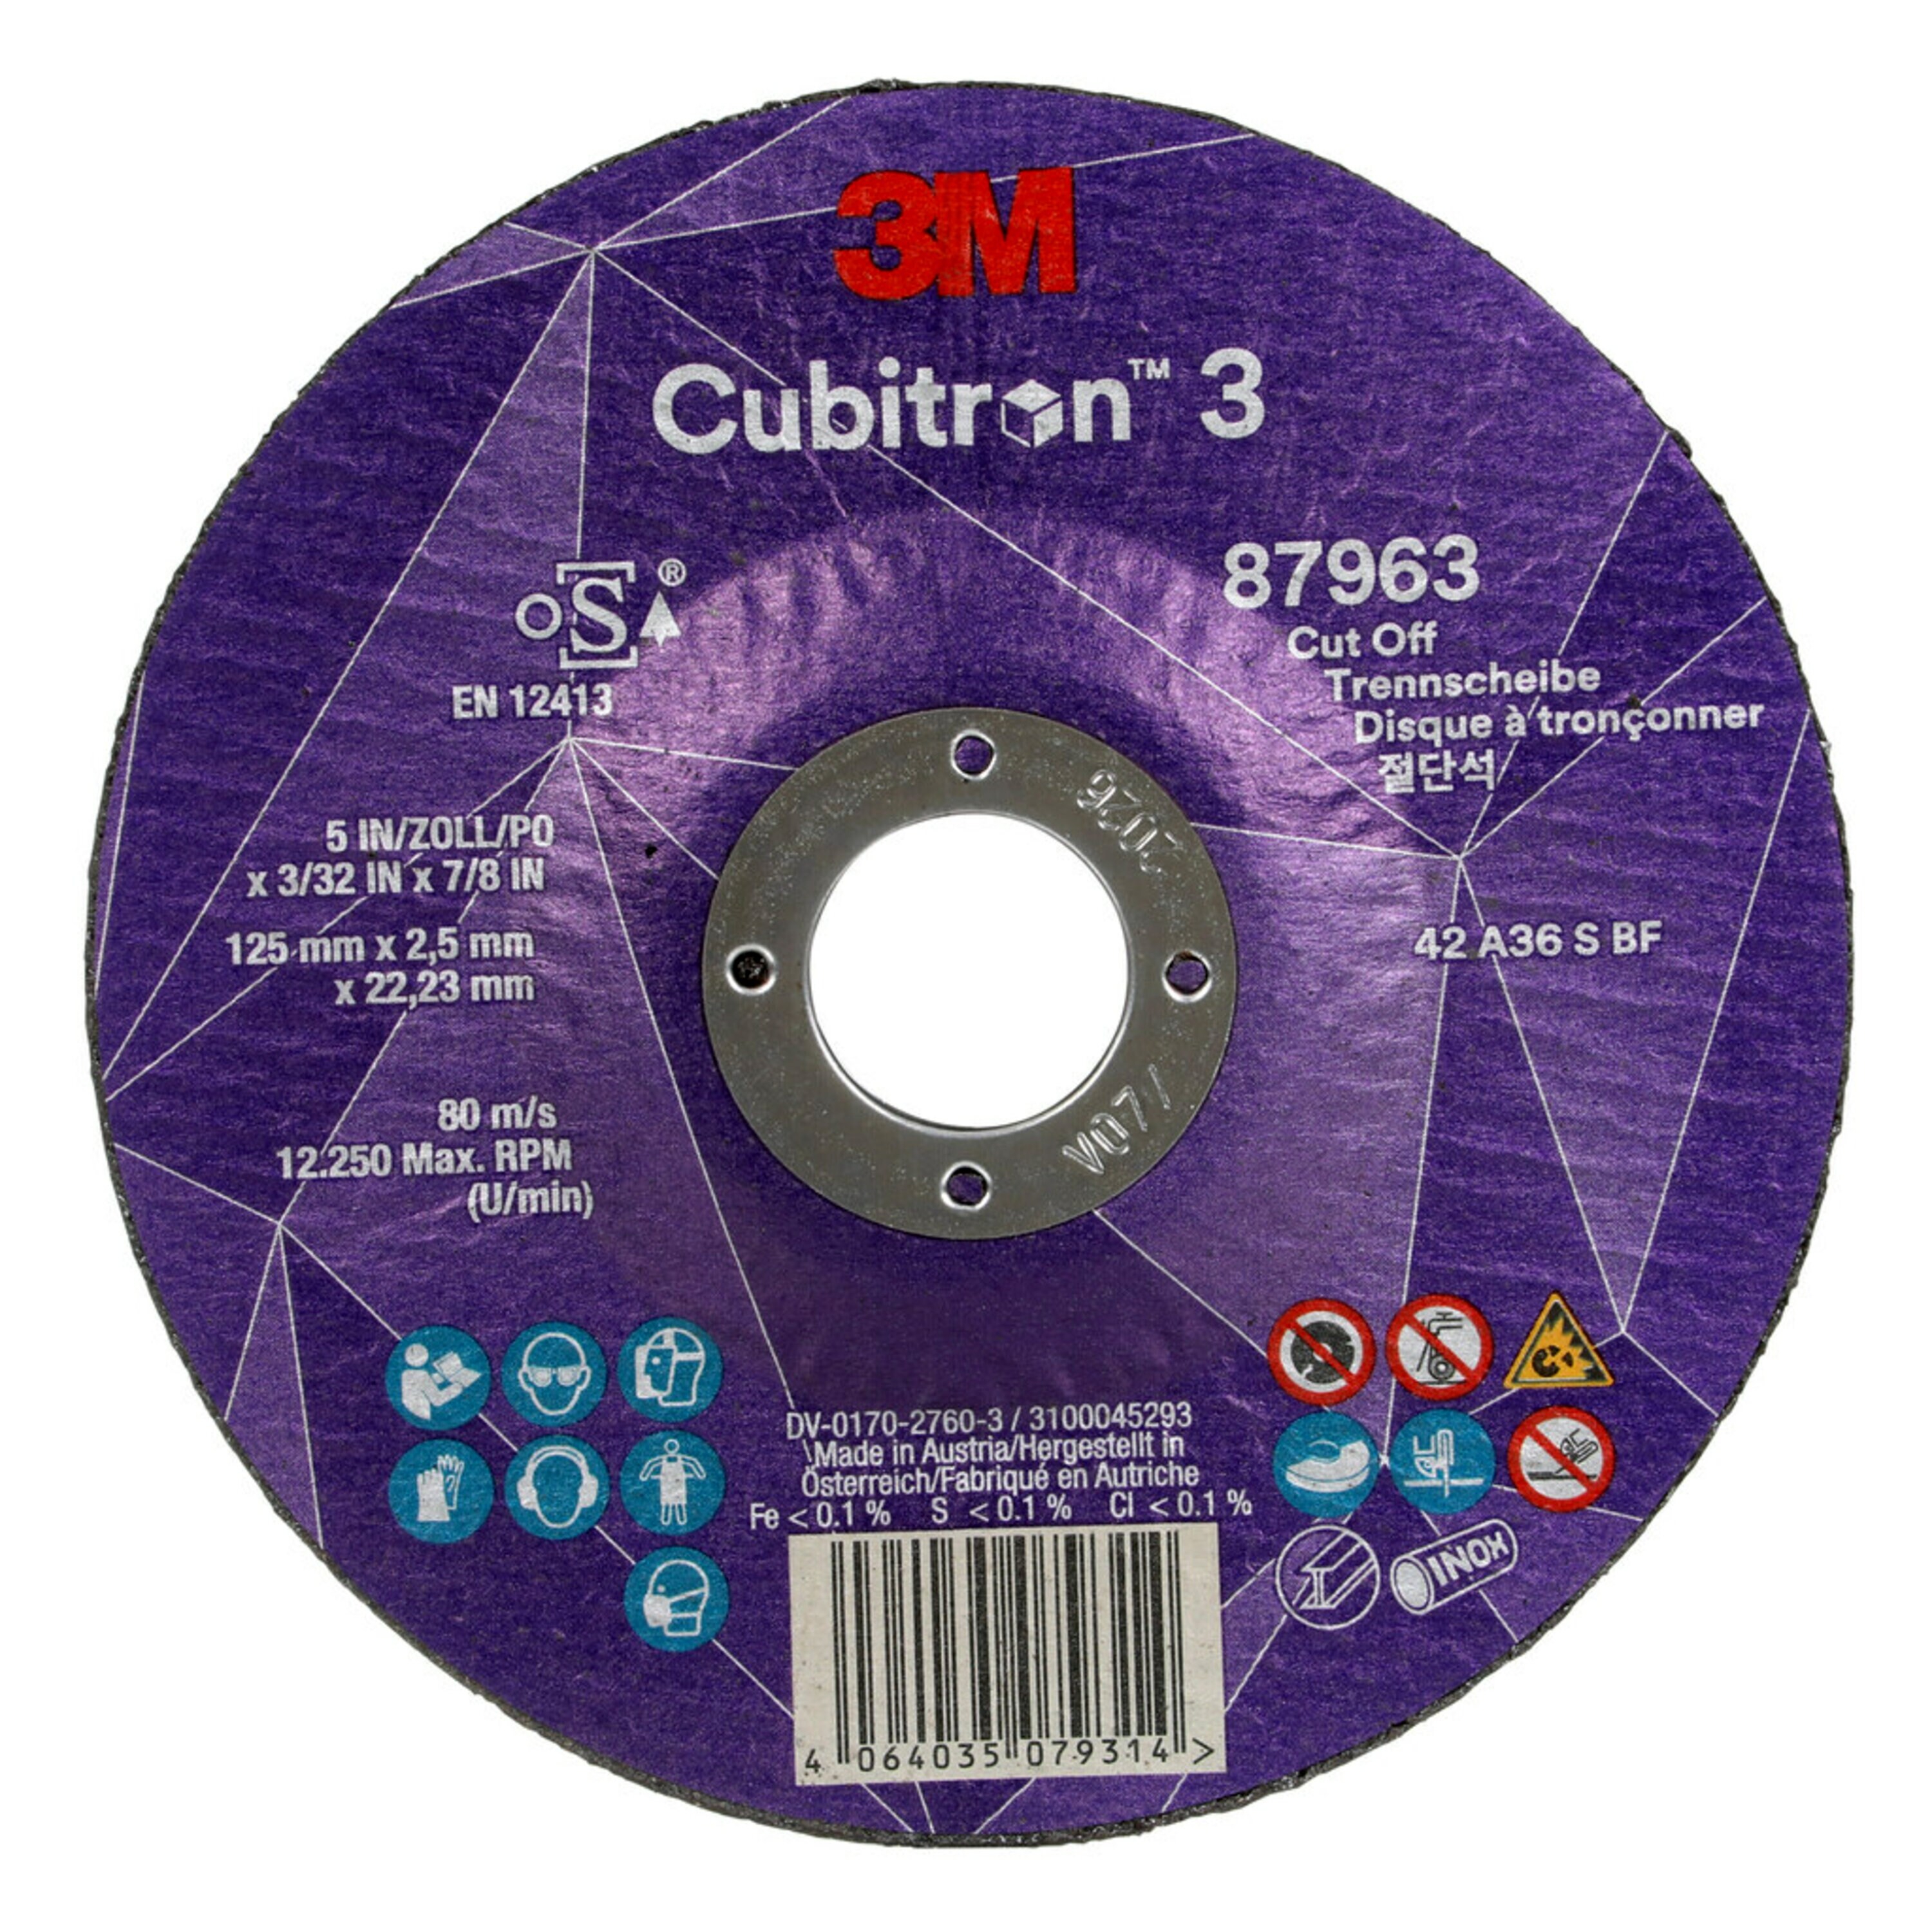 Disco de corte 3M Cubitron 3, 125 mm, 2,5 mm, 22,23 mm, 36 , tipo 42 #87963